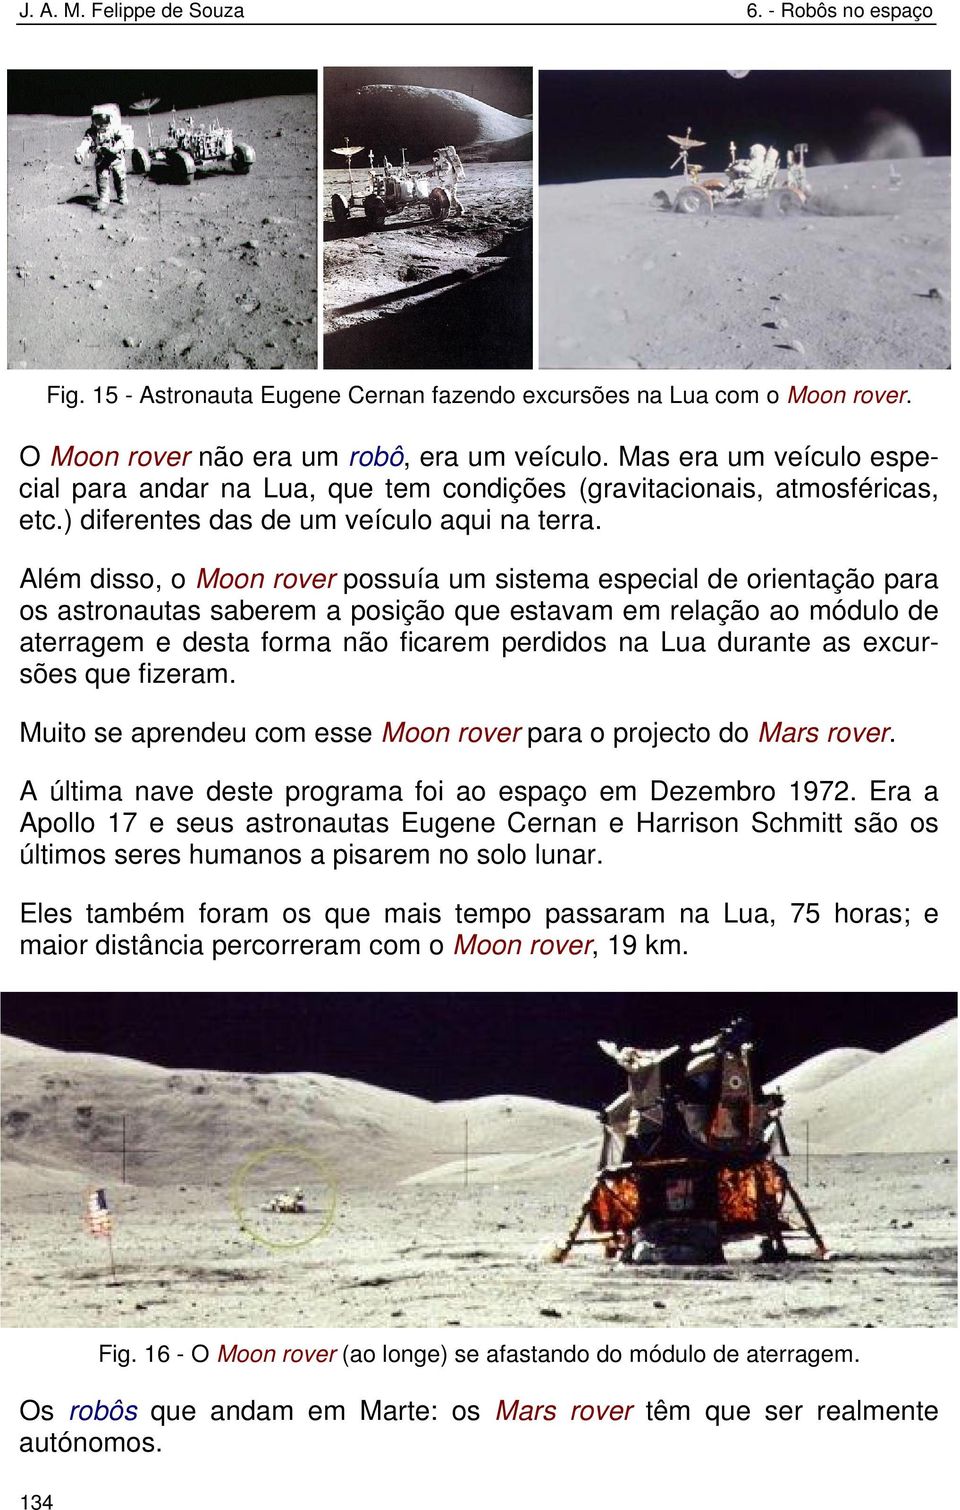 Além disso, o Moon rover possuía um sistema especial de orientação para os astronautas saberem a posição que estavam em relação ao módulo de aterragem e desta forma não ficarem perdidos na Lua